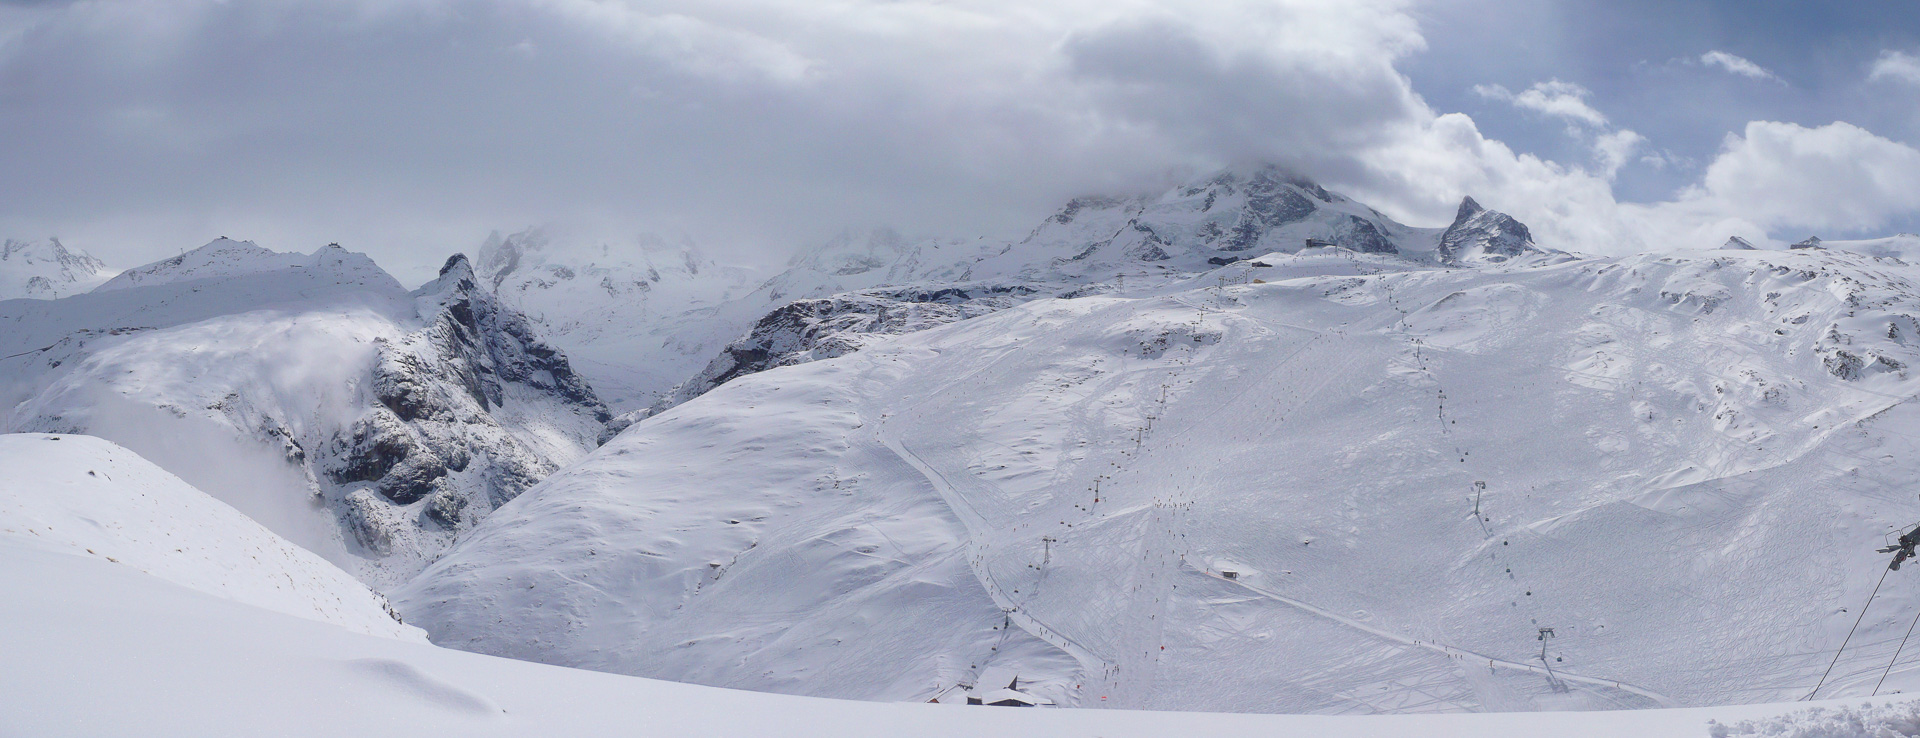 Blick auf das Skigebiet am Trockenen Steg.